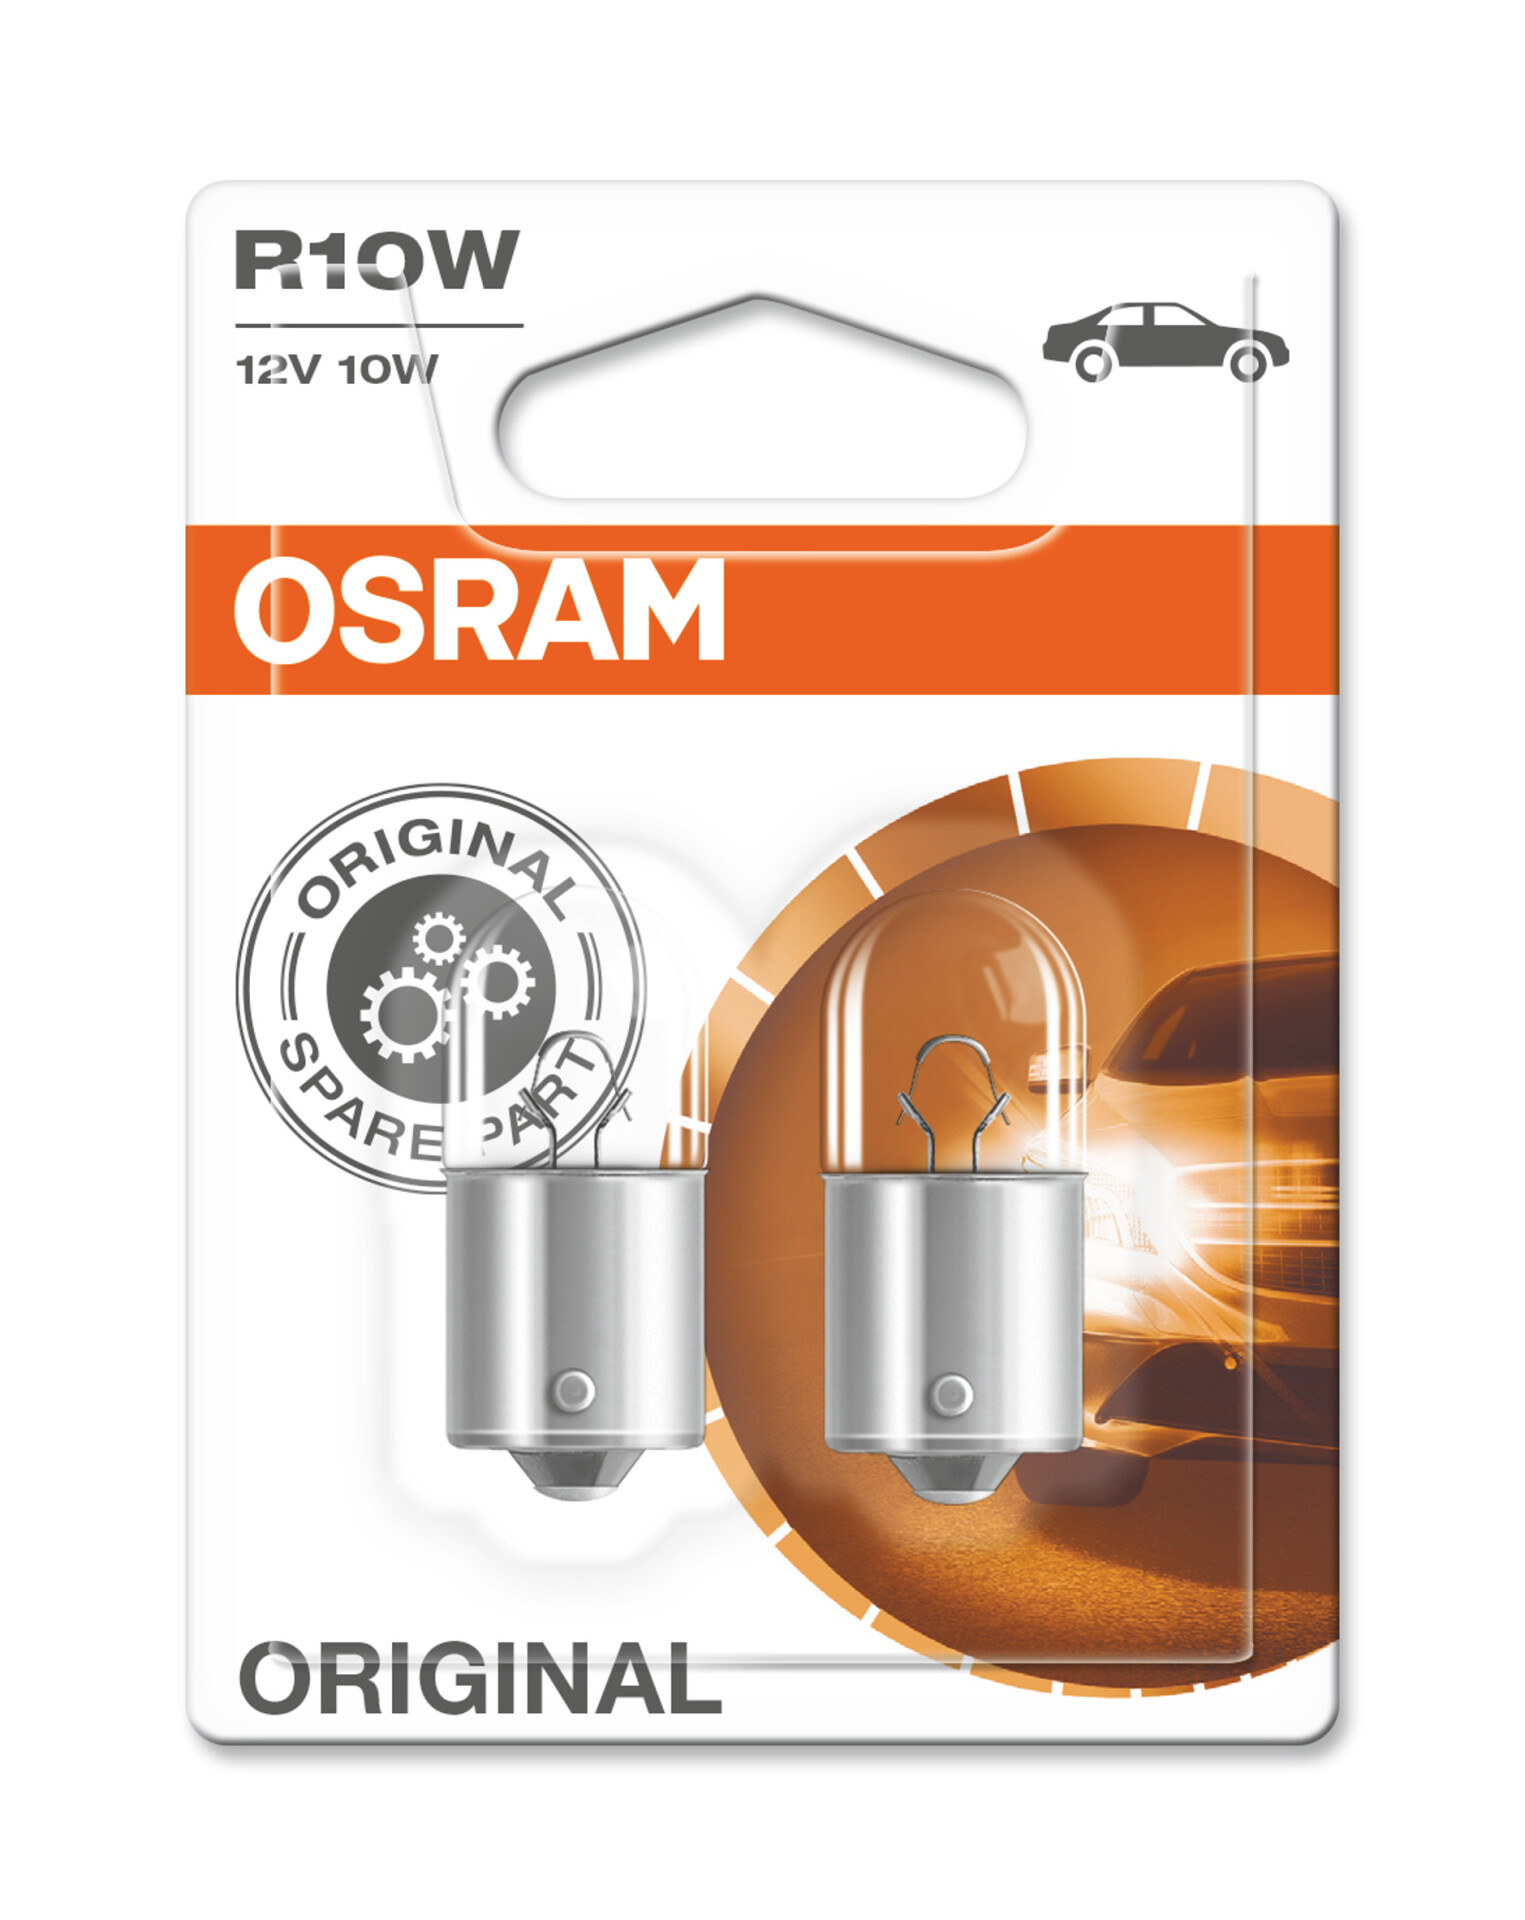 OSRAM R10W Original 10W (2 Stk.), Art.-Nr. 5008-02B